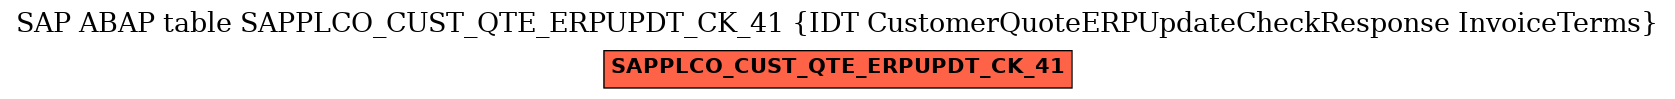 E-R Diagram for table SAPPLCO_CUST_QTE_ERPUPDT_CK_41 (IDT CustomerQuoteERPUpdateCheckResponse InvoiceTerms)